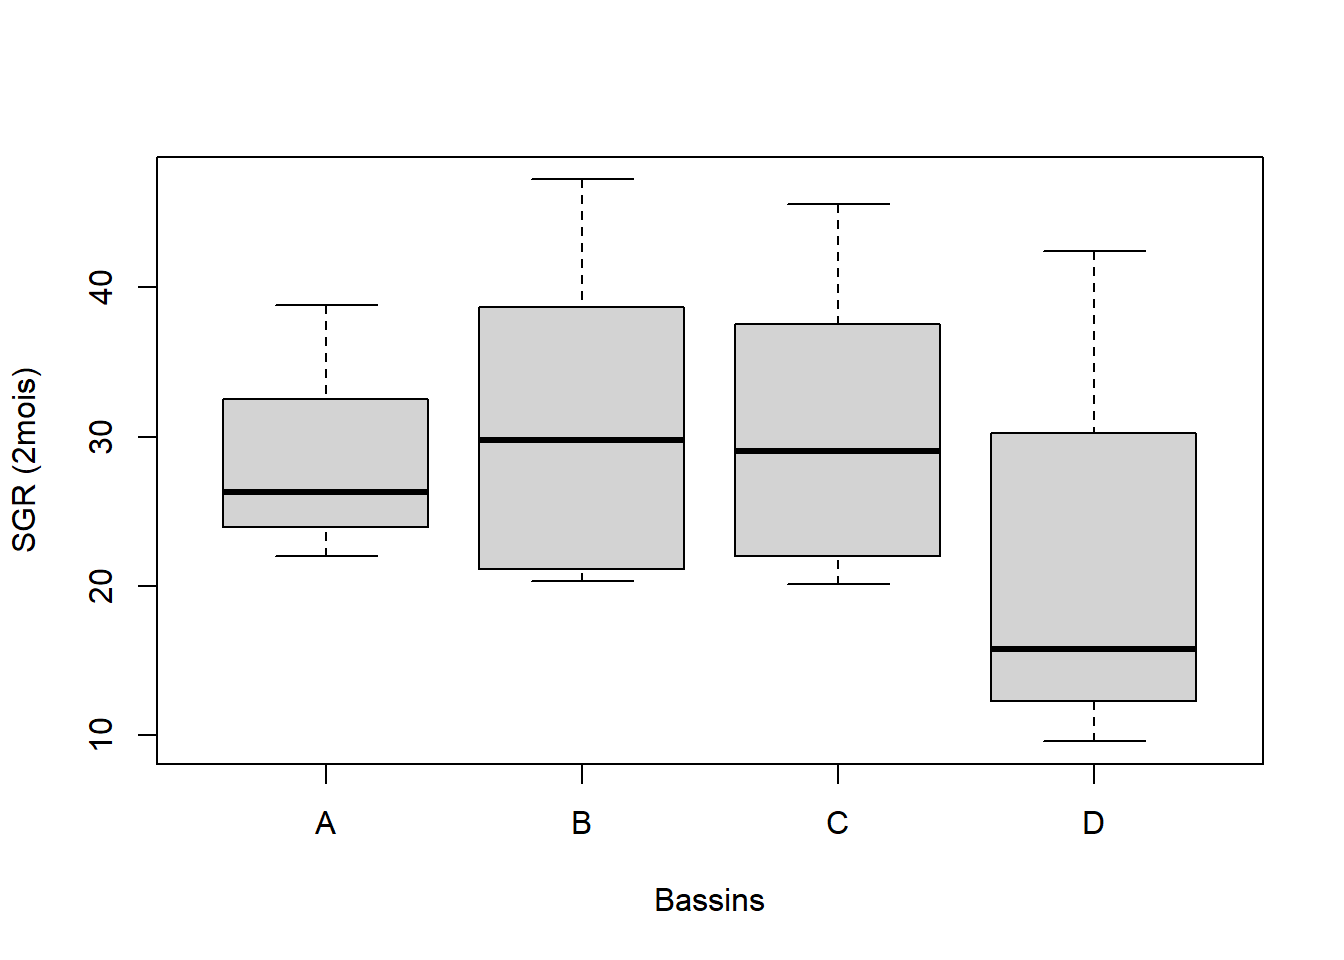 Diagramme à moustache de la distribution de la température dans les 4 bassins expérimentaux (A, B, C, D)